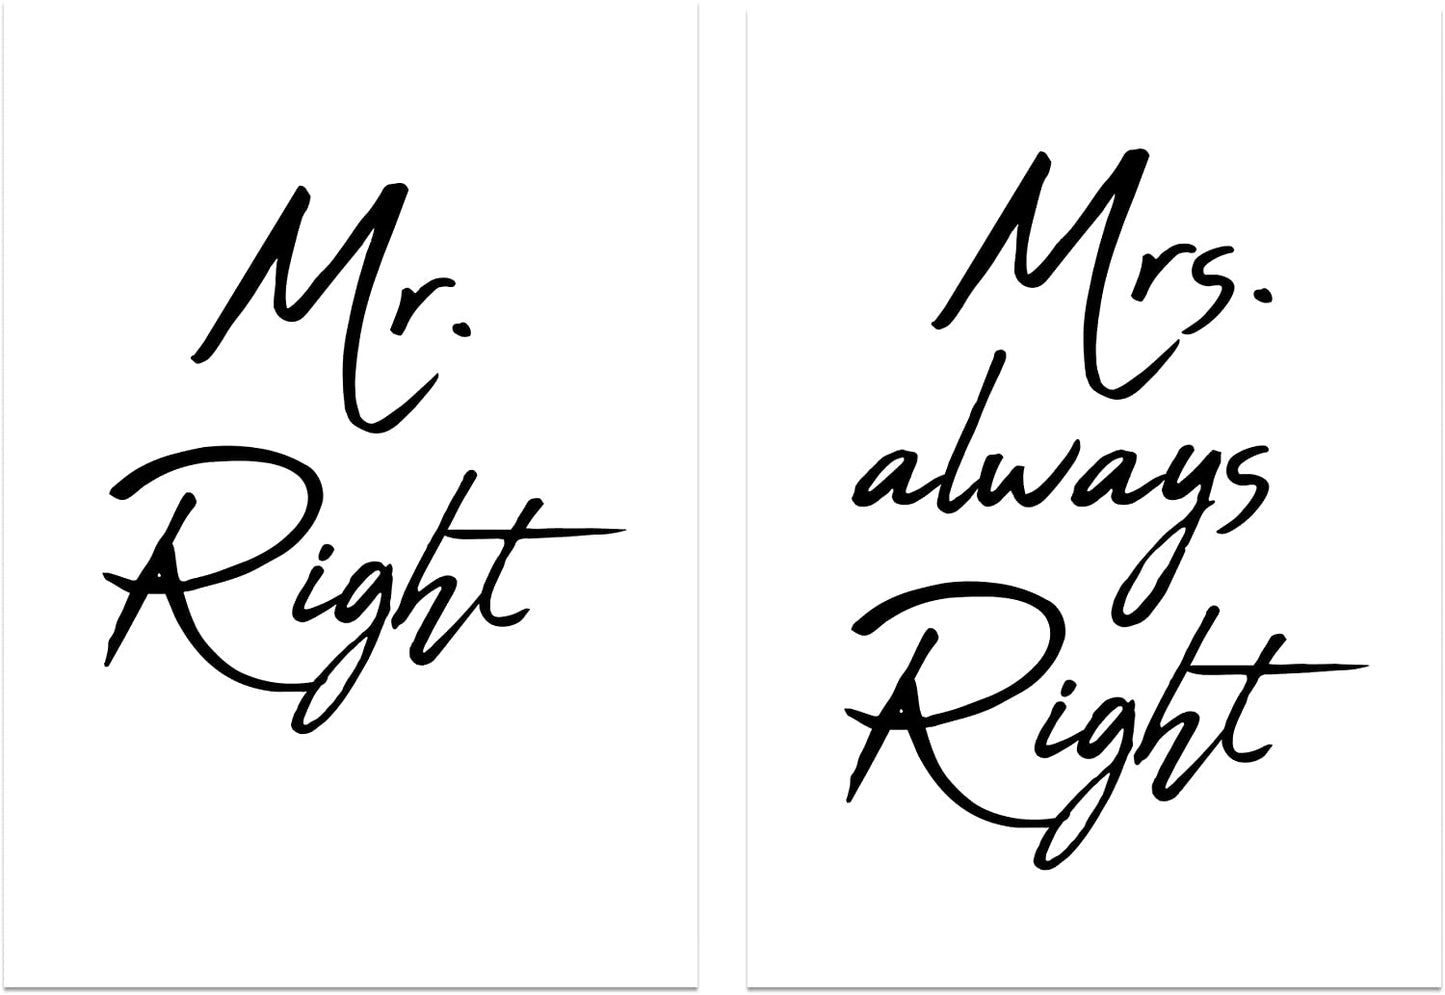 PICSonPAPER Poster 2er-Set Mr. Right & Mrs. Always Right, ungerahmt 30 cm x 40 cm, Schlafzimmerdeko, Typographie, Geschenk zur Hochzeit (Mr. Right & Mrs. Always Right, 30 cm x 40 ungerahmt)